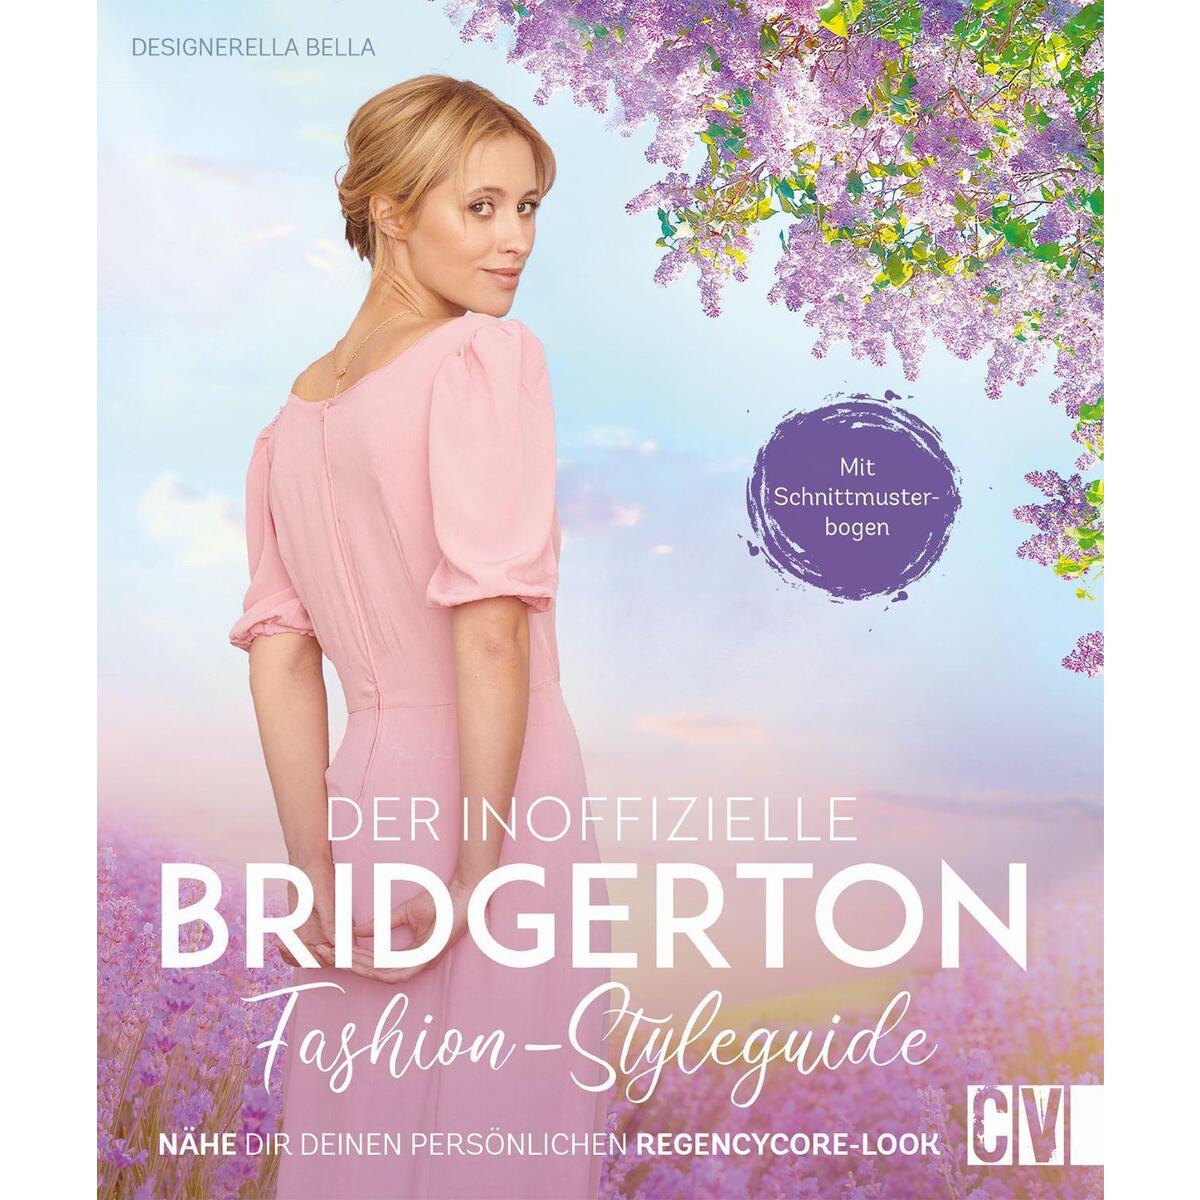 Der inoffizielle Bridgerton Fashion-Styleguide von Christophorus Verlag